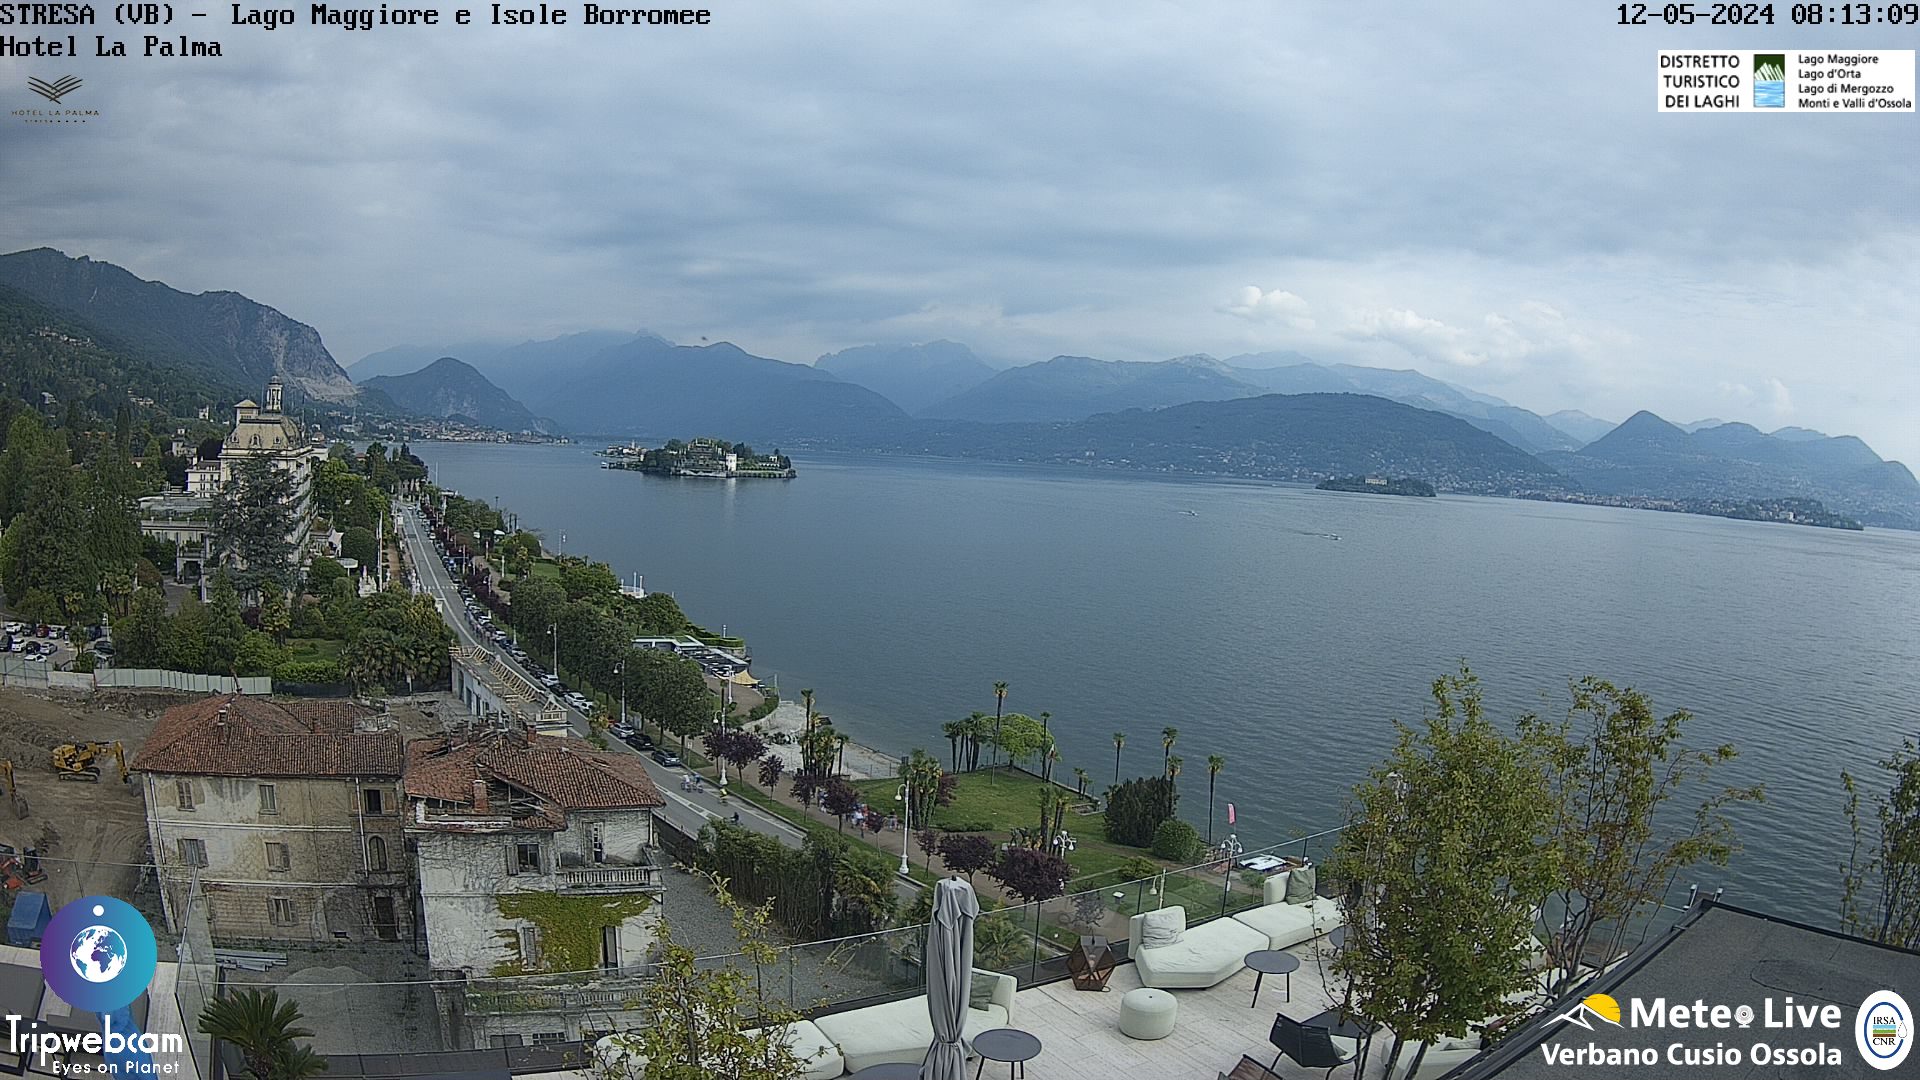 Stresa (Lago Maggiore) Ven. 09:18